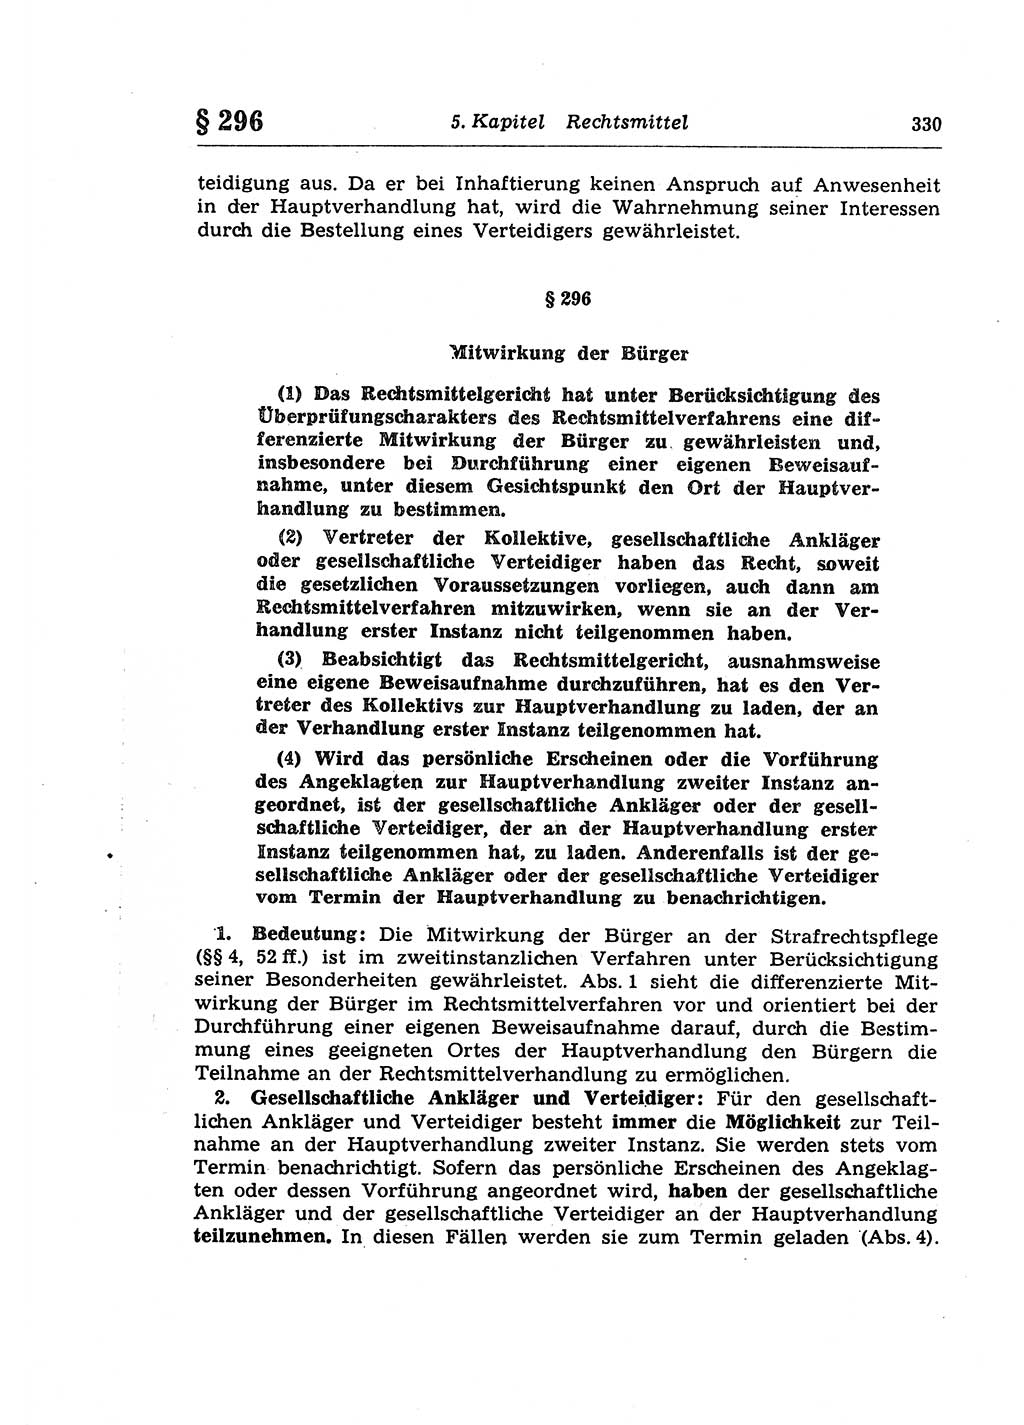 Strafprozeßrecht der DDR (Deutsche Demokratische Republik), Lehrkommentar zur Strafprozeßordnung (StPO) 1968, Seite 330 (Strafprozeßr. DDR Lehrkomm. StPO 19688, S. 330)